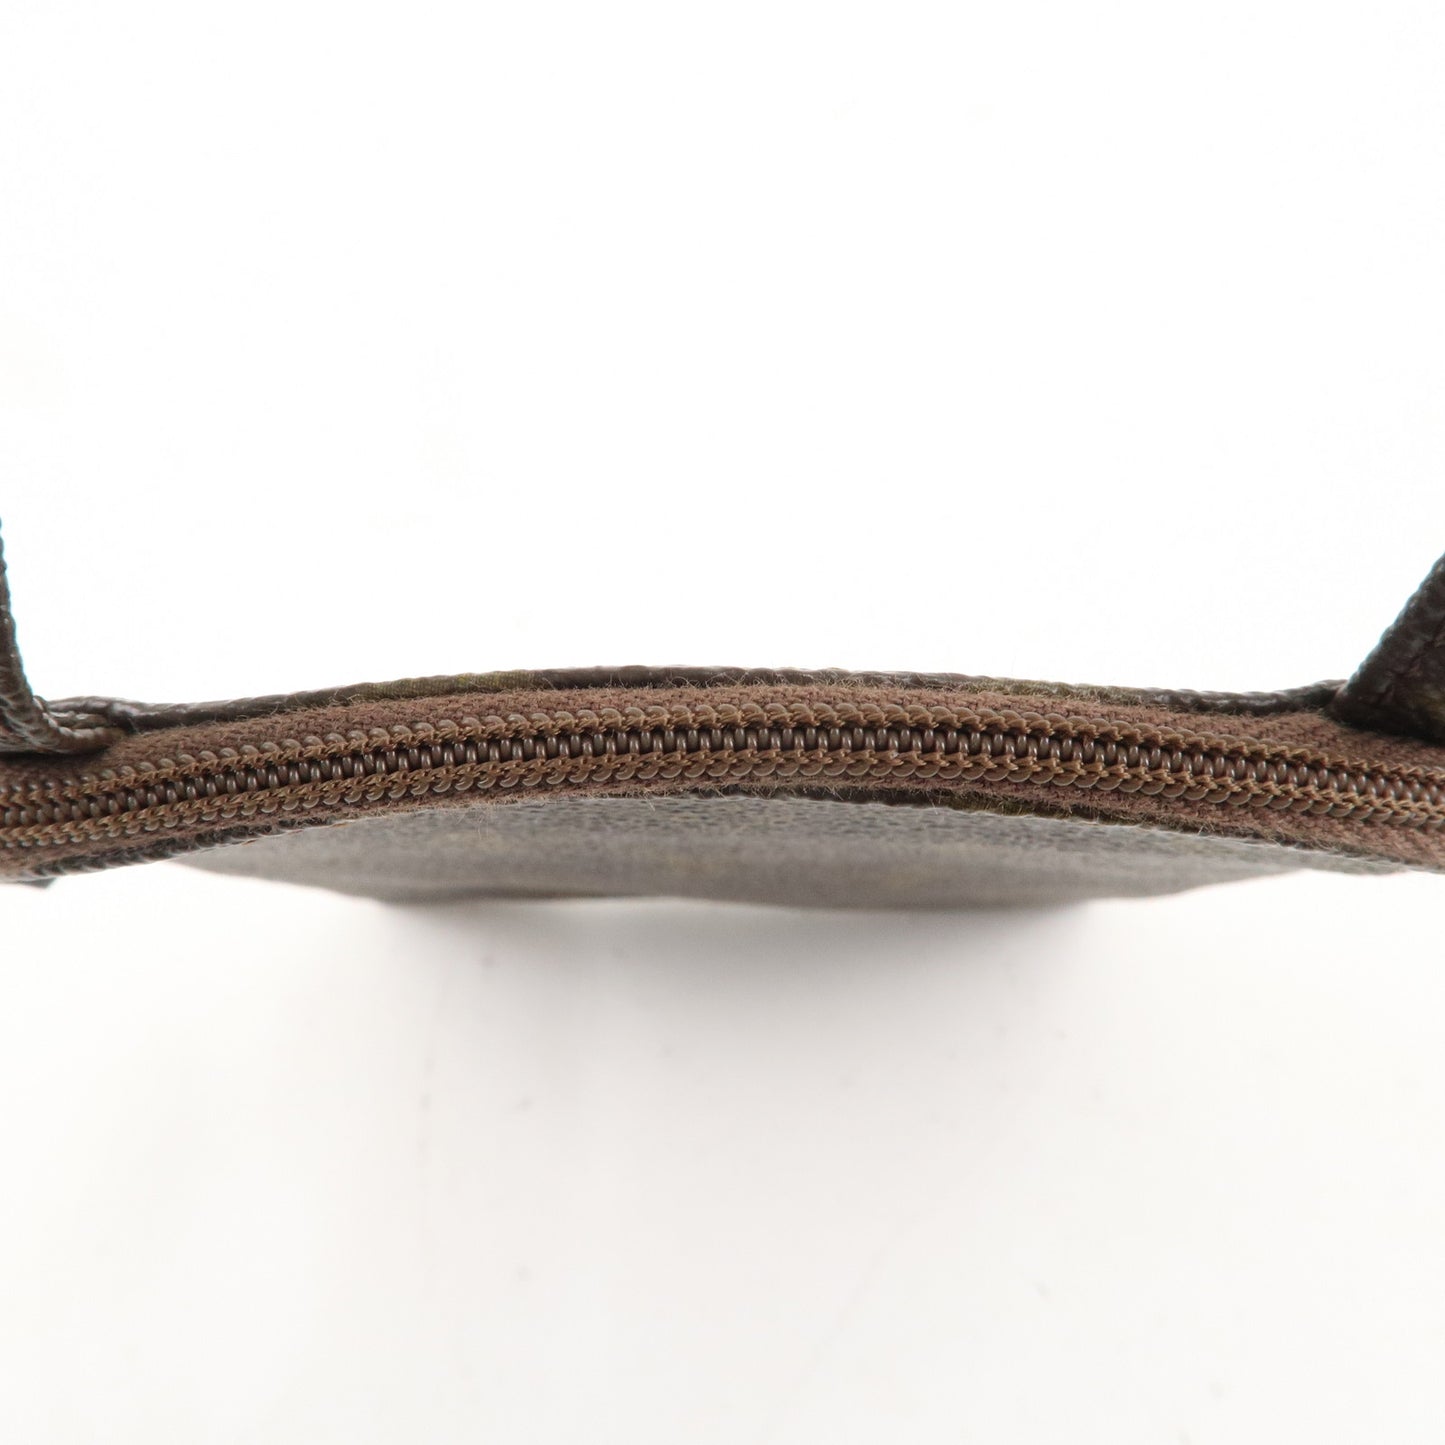 Louis Vuitton Monogram Secret Pochette Mini Bag Pouch M45484